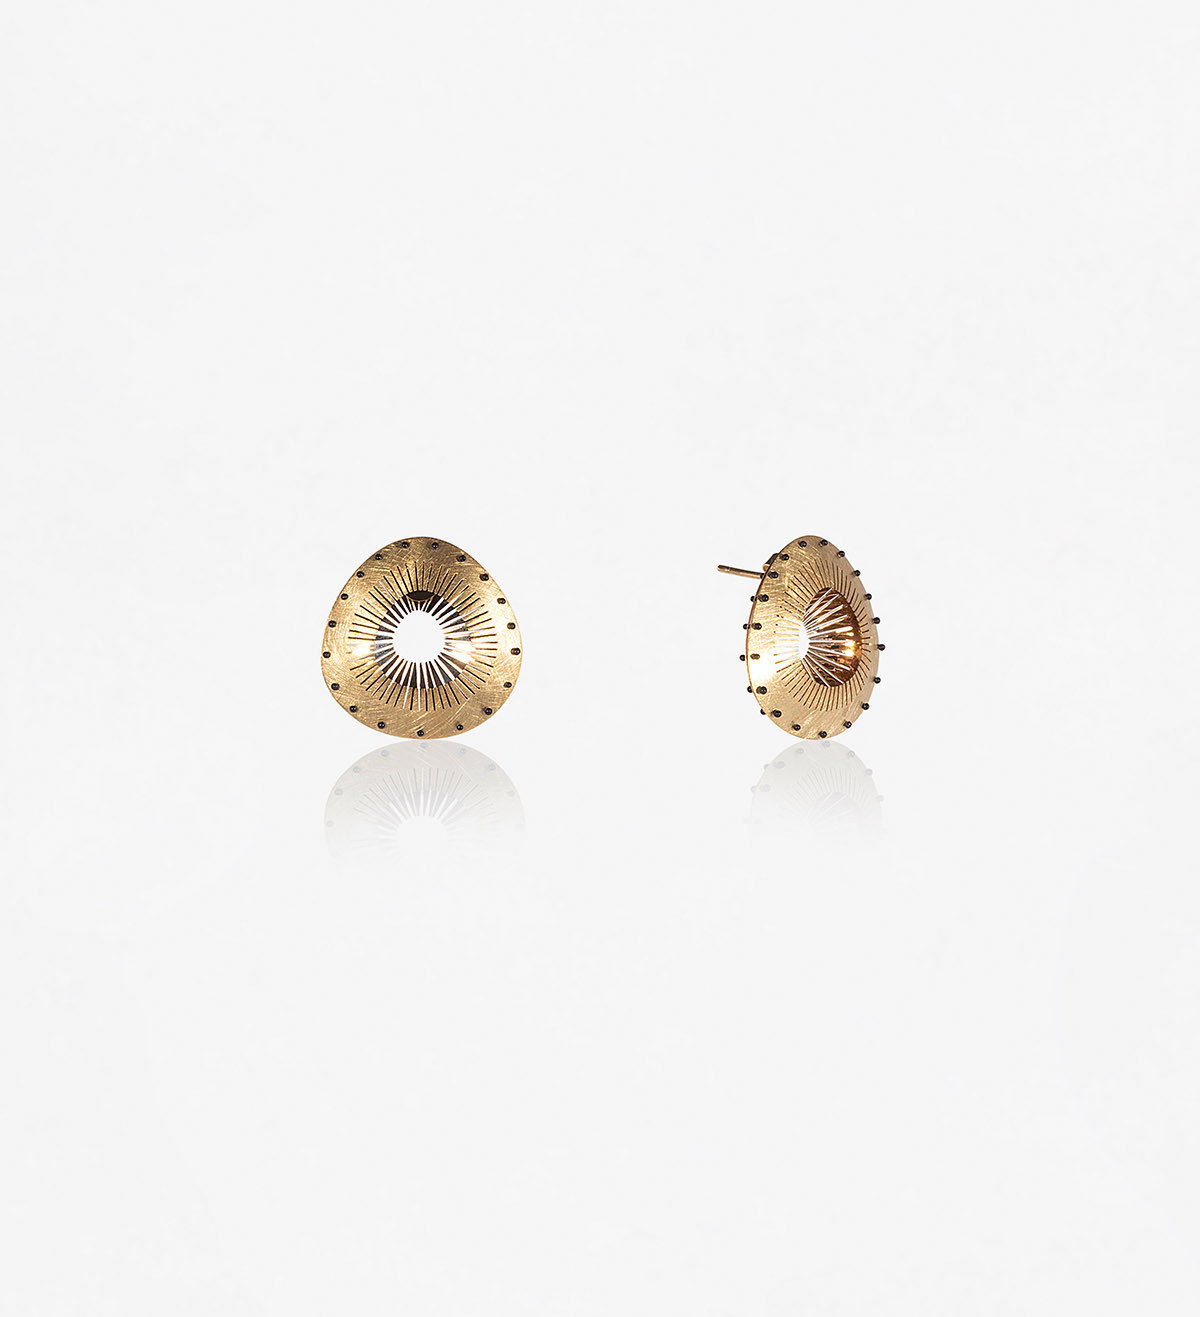 18k gold earrings Tresor 25mm